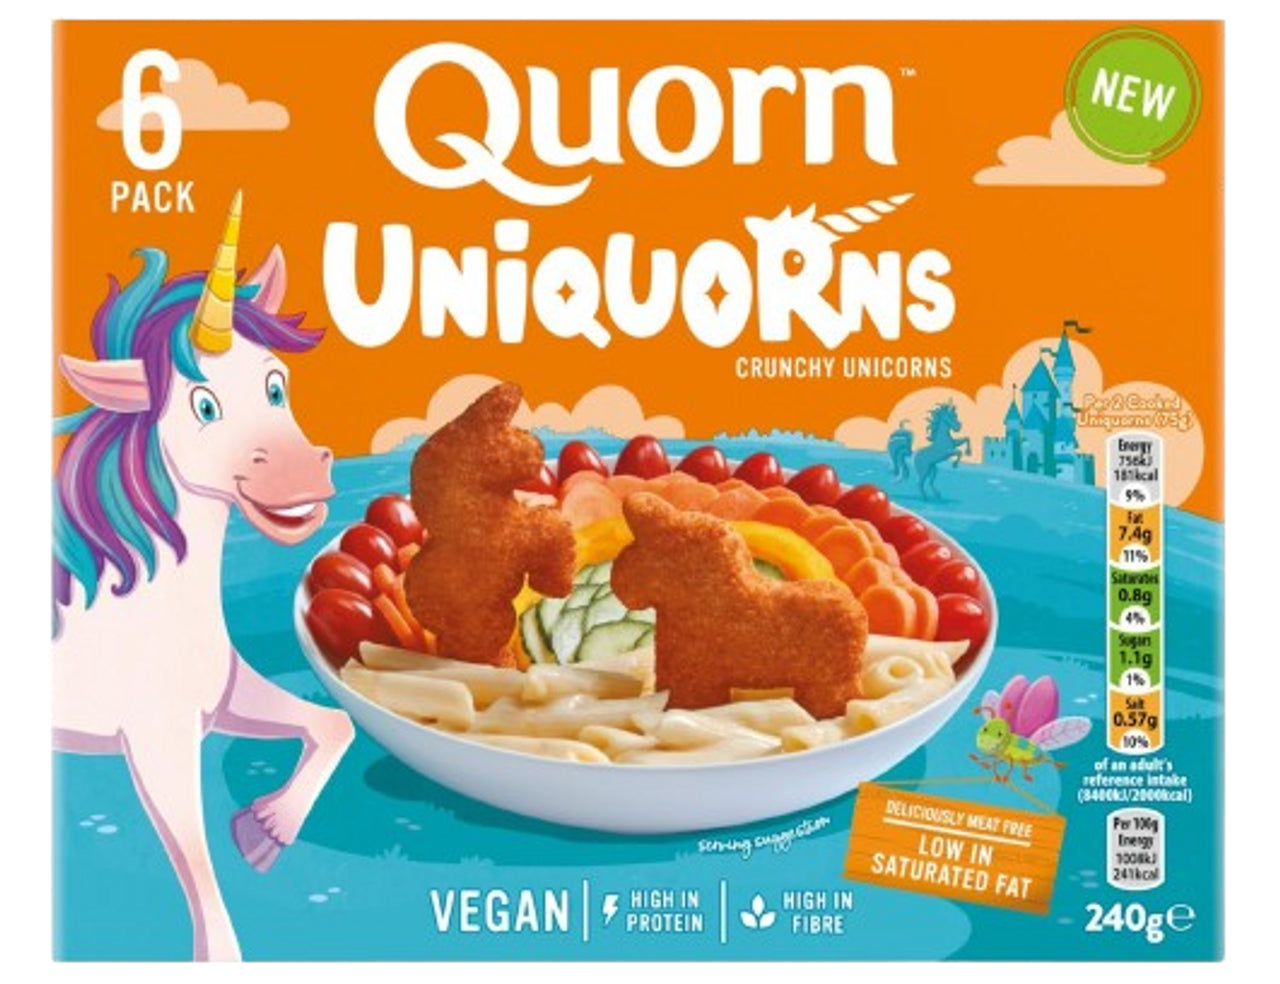 QUORN Meat Free Uniquorns, Crunchy Unicorn Nuggets, 240g (6 Pieces) - Vegan